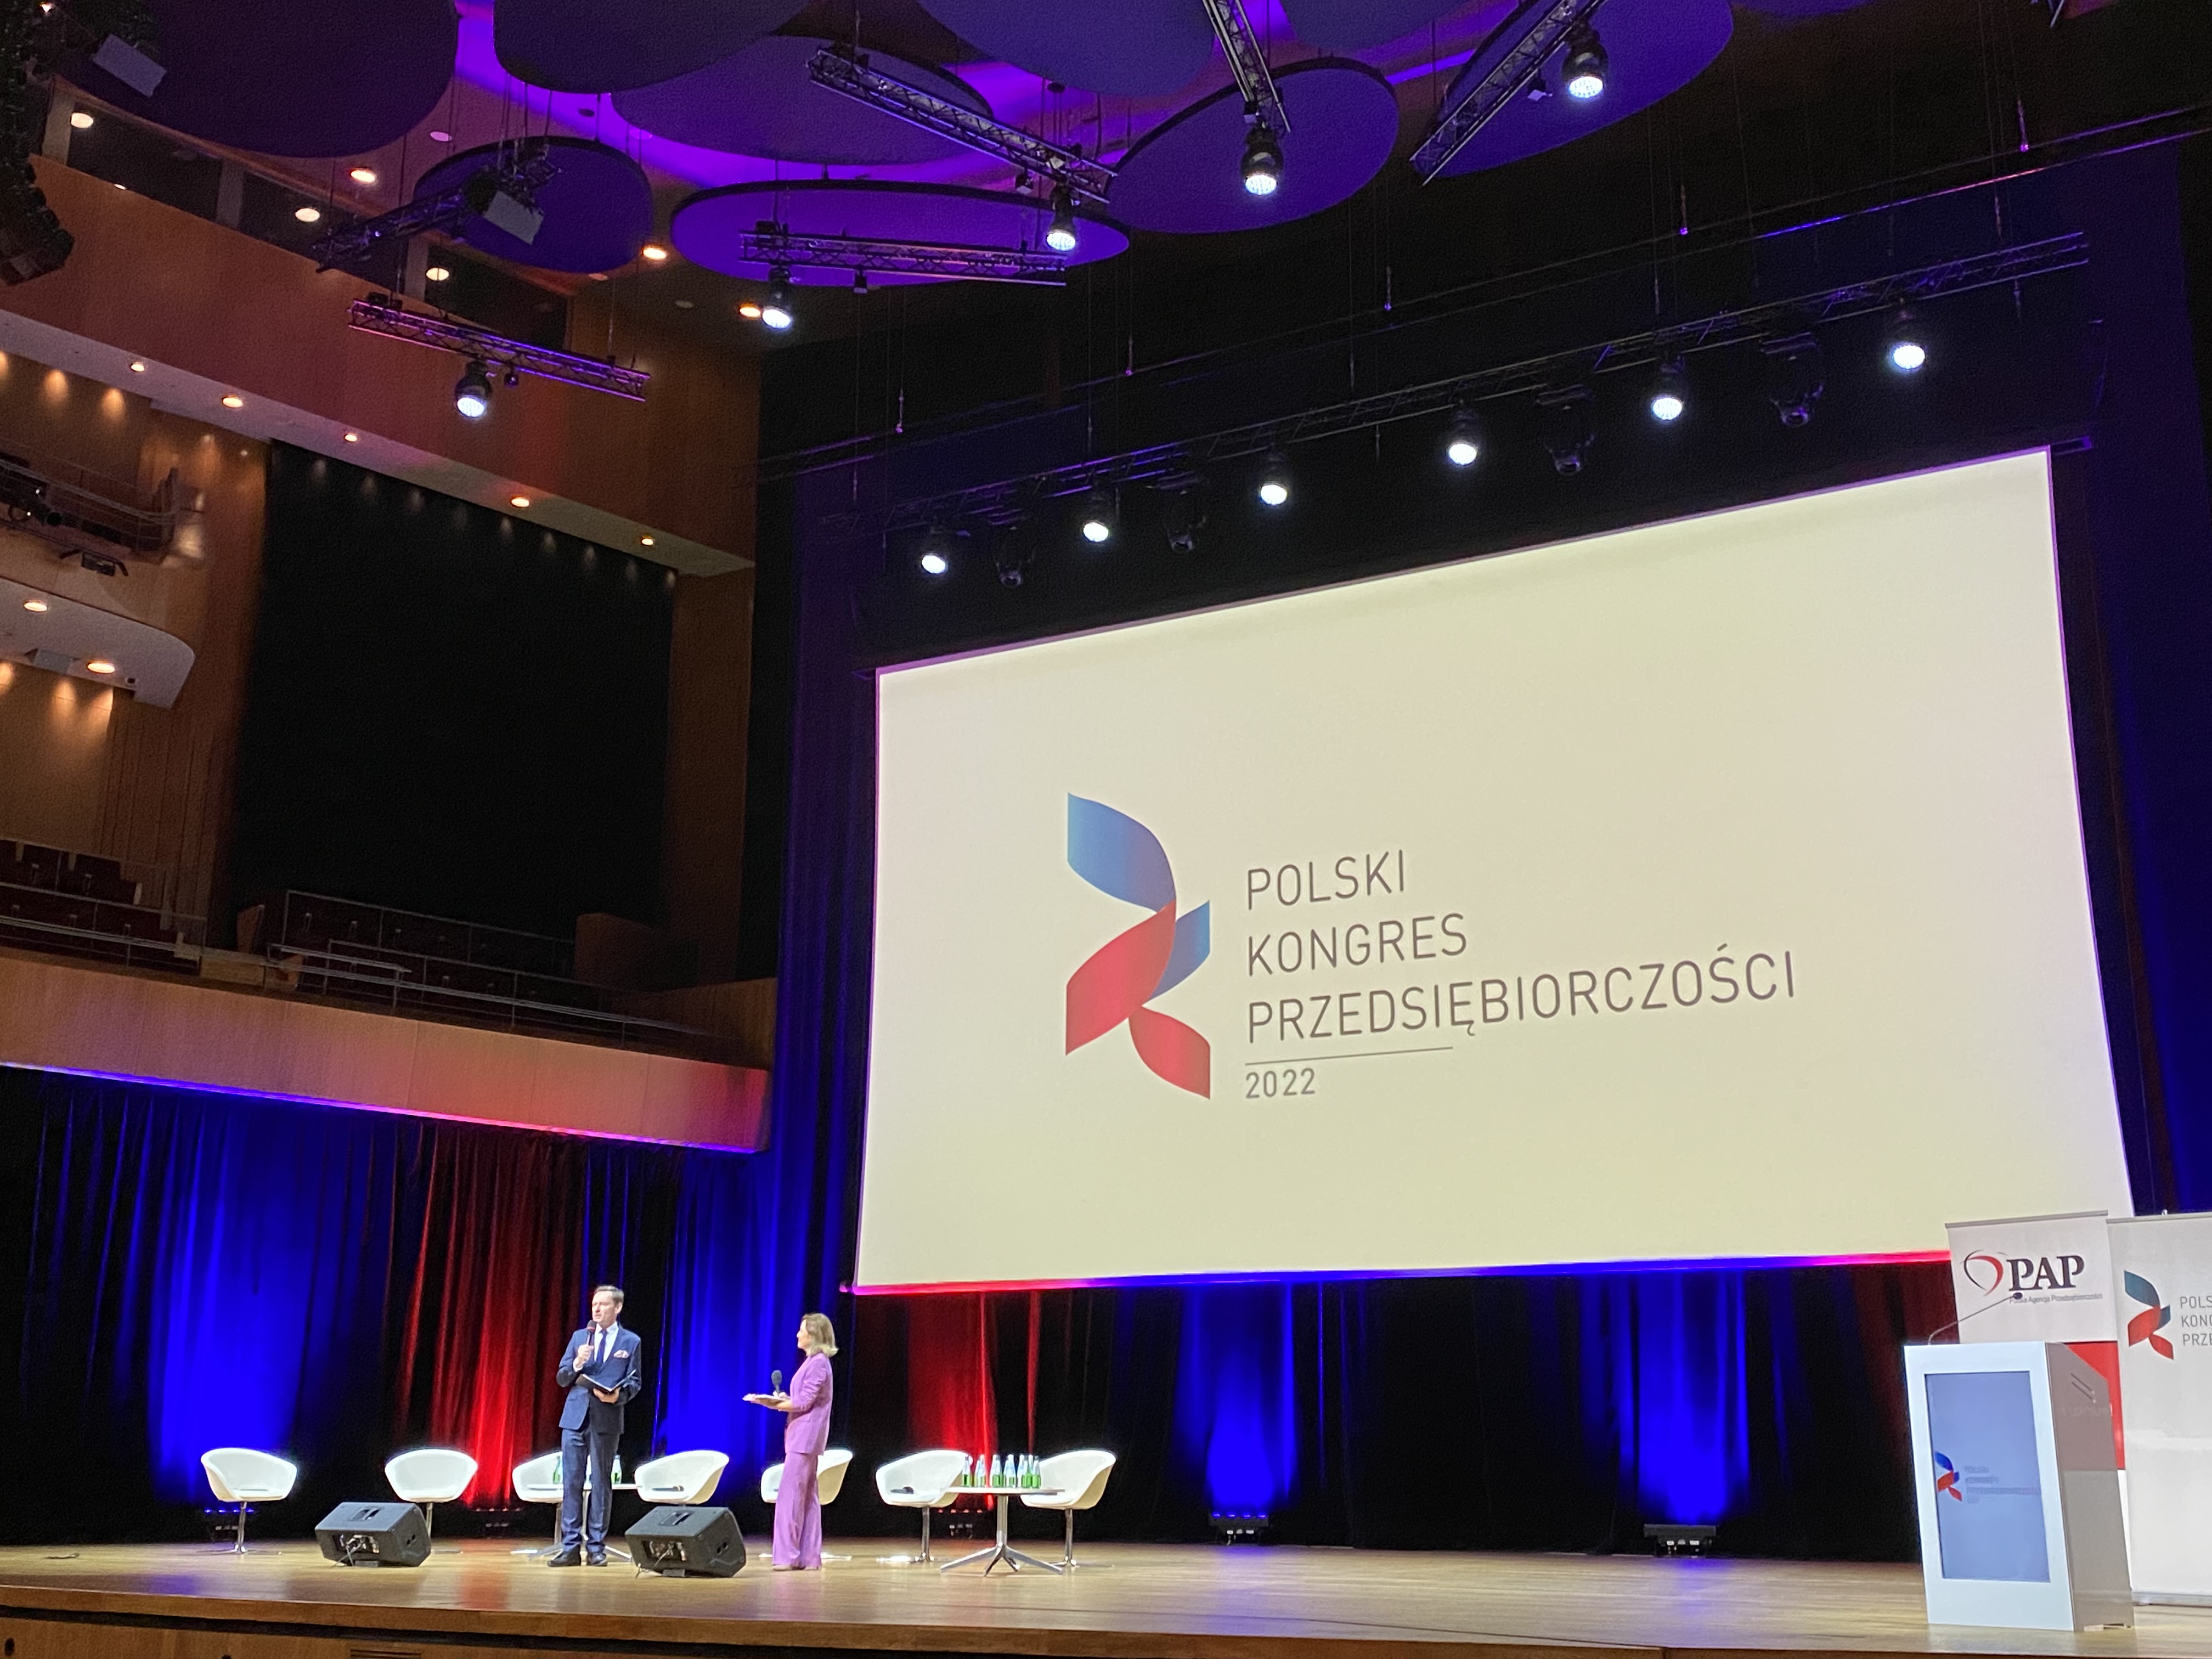 scena oświetlona światłami niebieskim i czerwonym, w tle napis na ekranie &quot;Polski Kongres Przedsiębiorczości 2022&quot;. Na scenie dwoje prowadzących